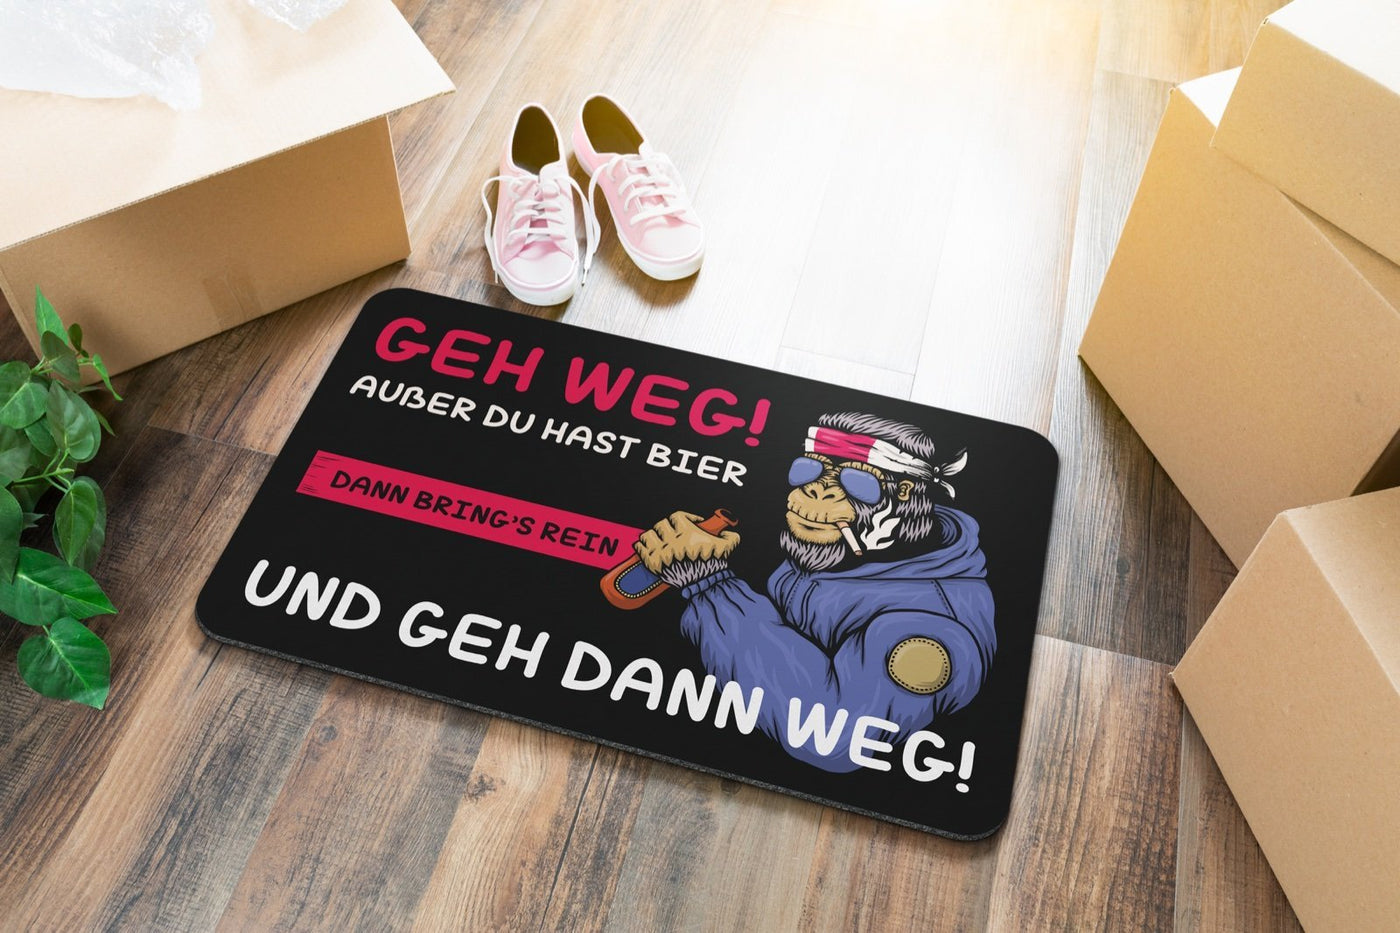 Bild: Fußmatte - GEH Weg außer du hast Bier dann bring´s rein und GEH dann Weg! Geschenkidee